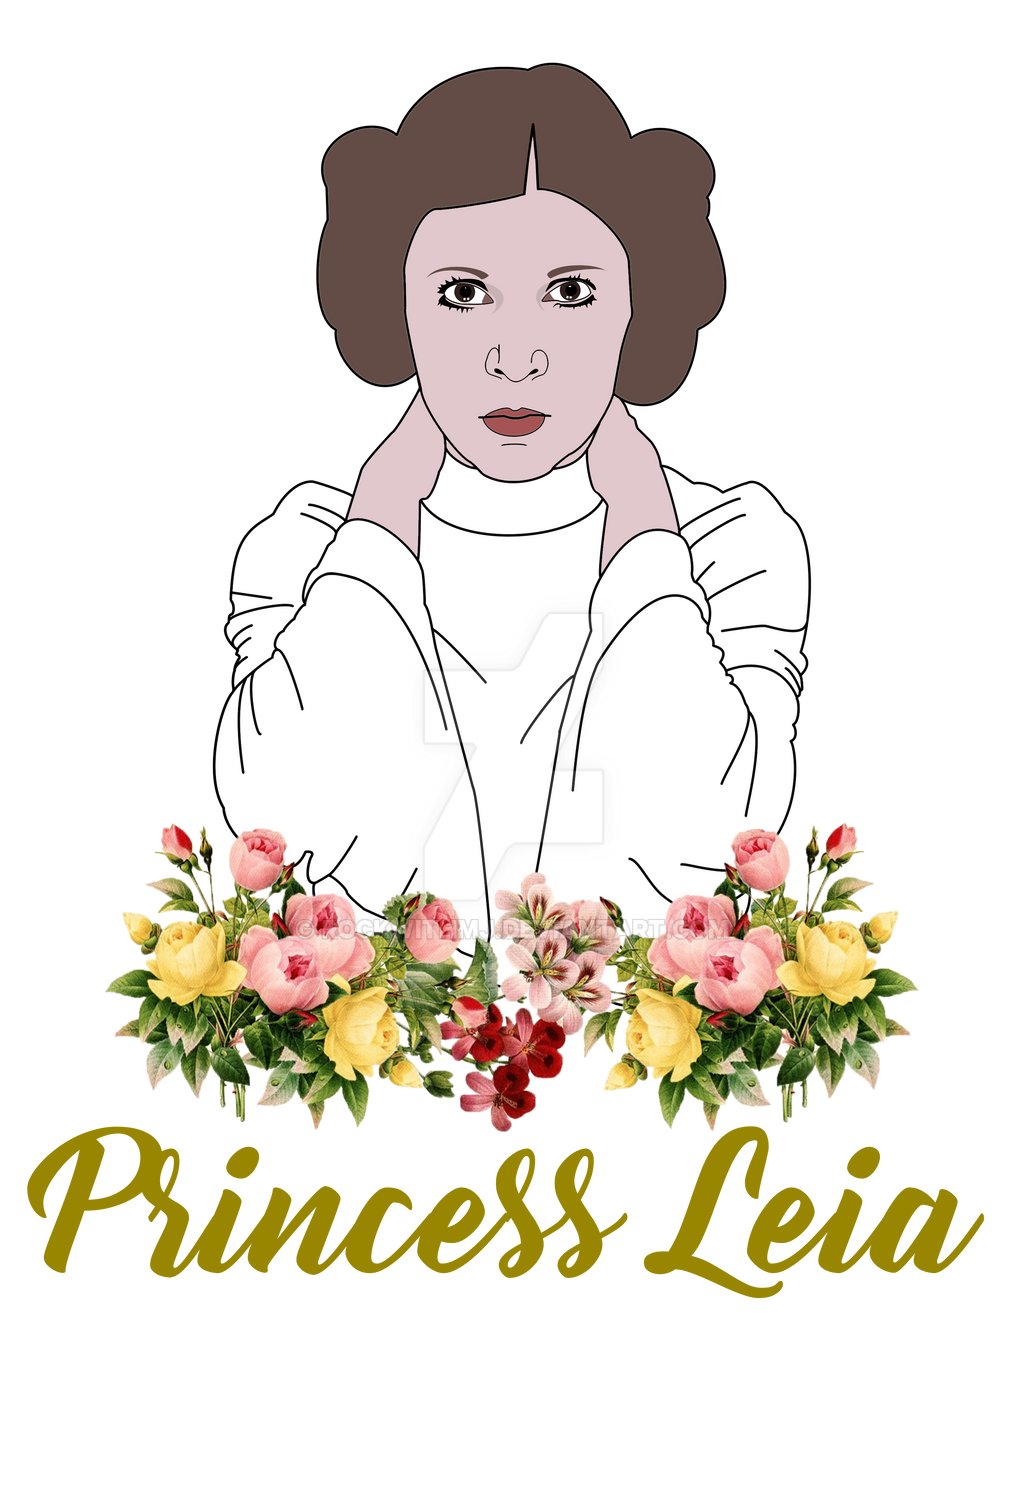 Download Princess Leia by RockWithMJ on DeviantArt